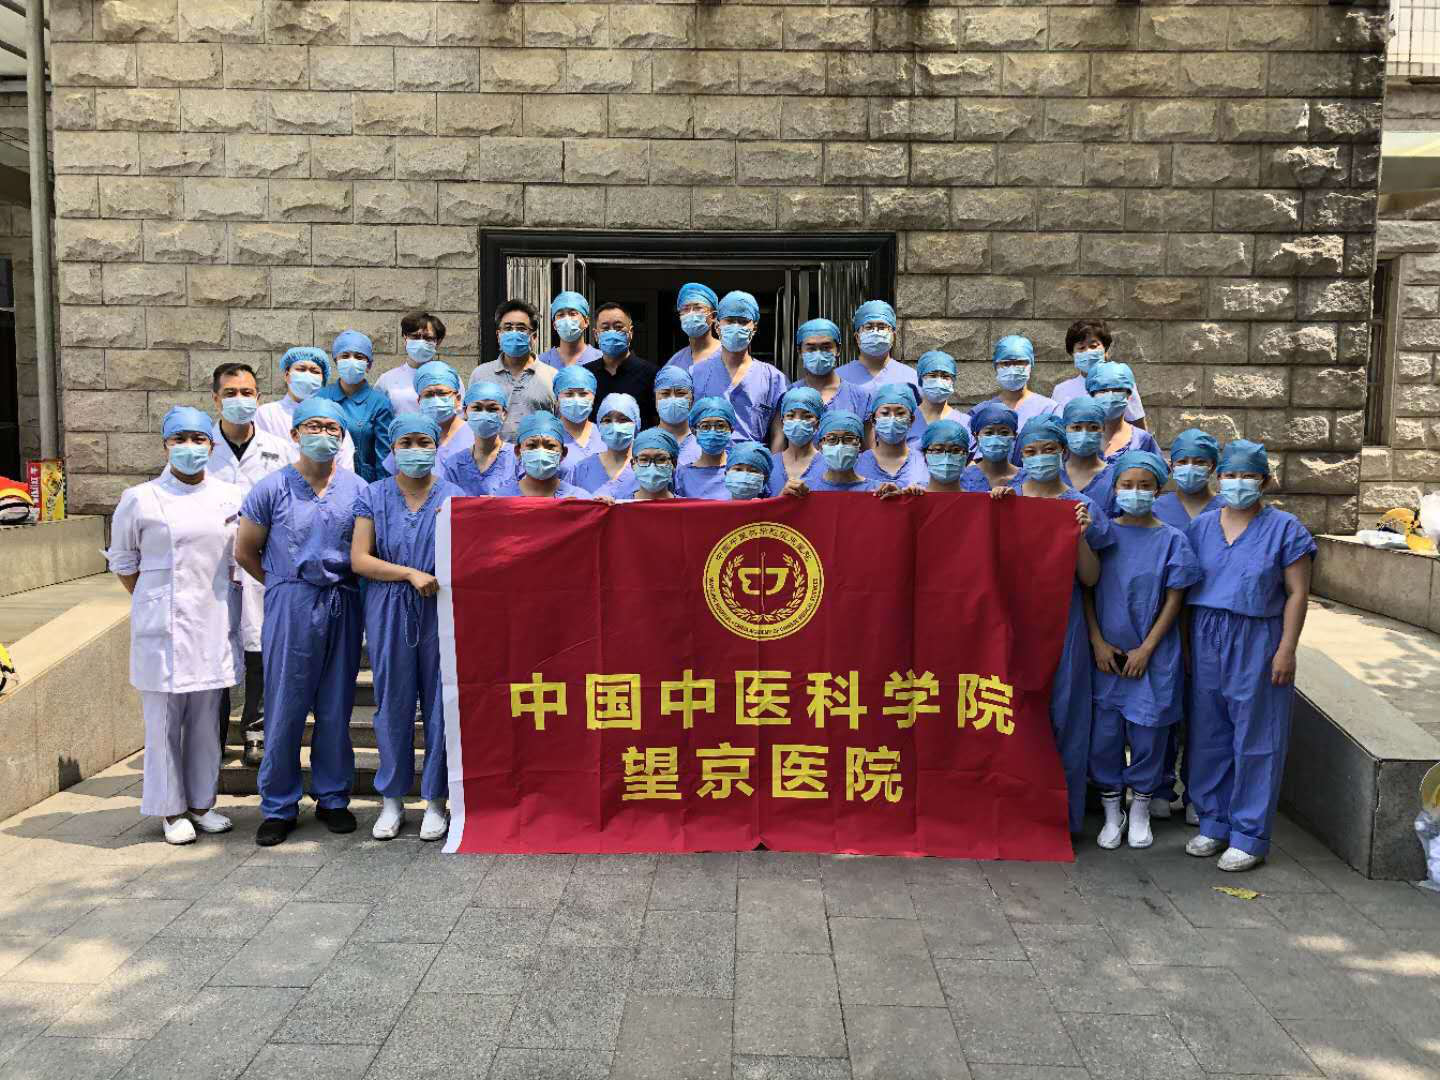 包含中国中医科学院望京医院三甲中医医保无需定点的词条